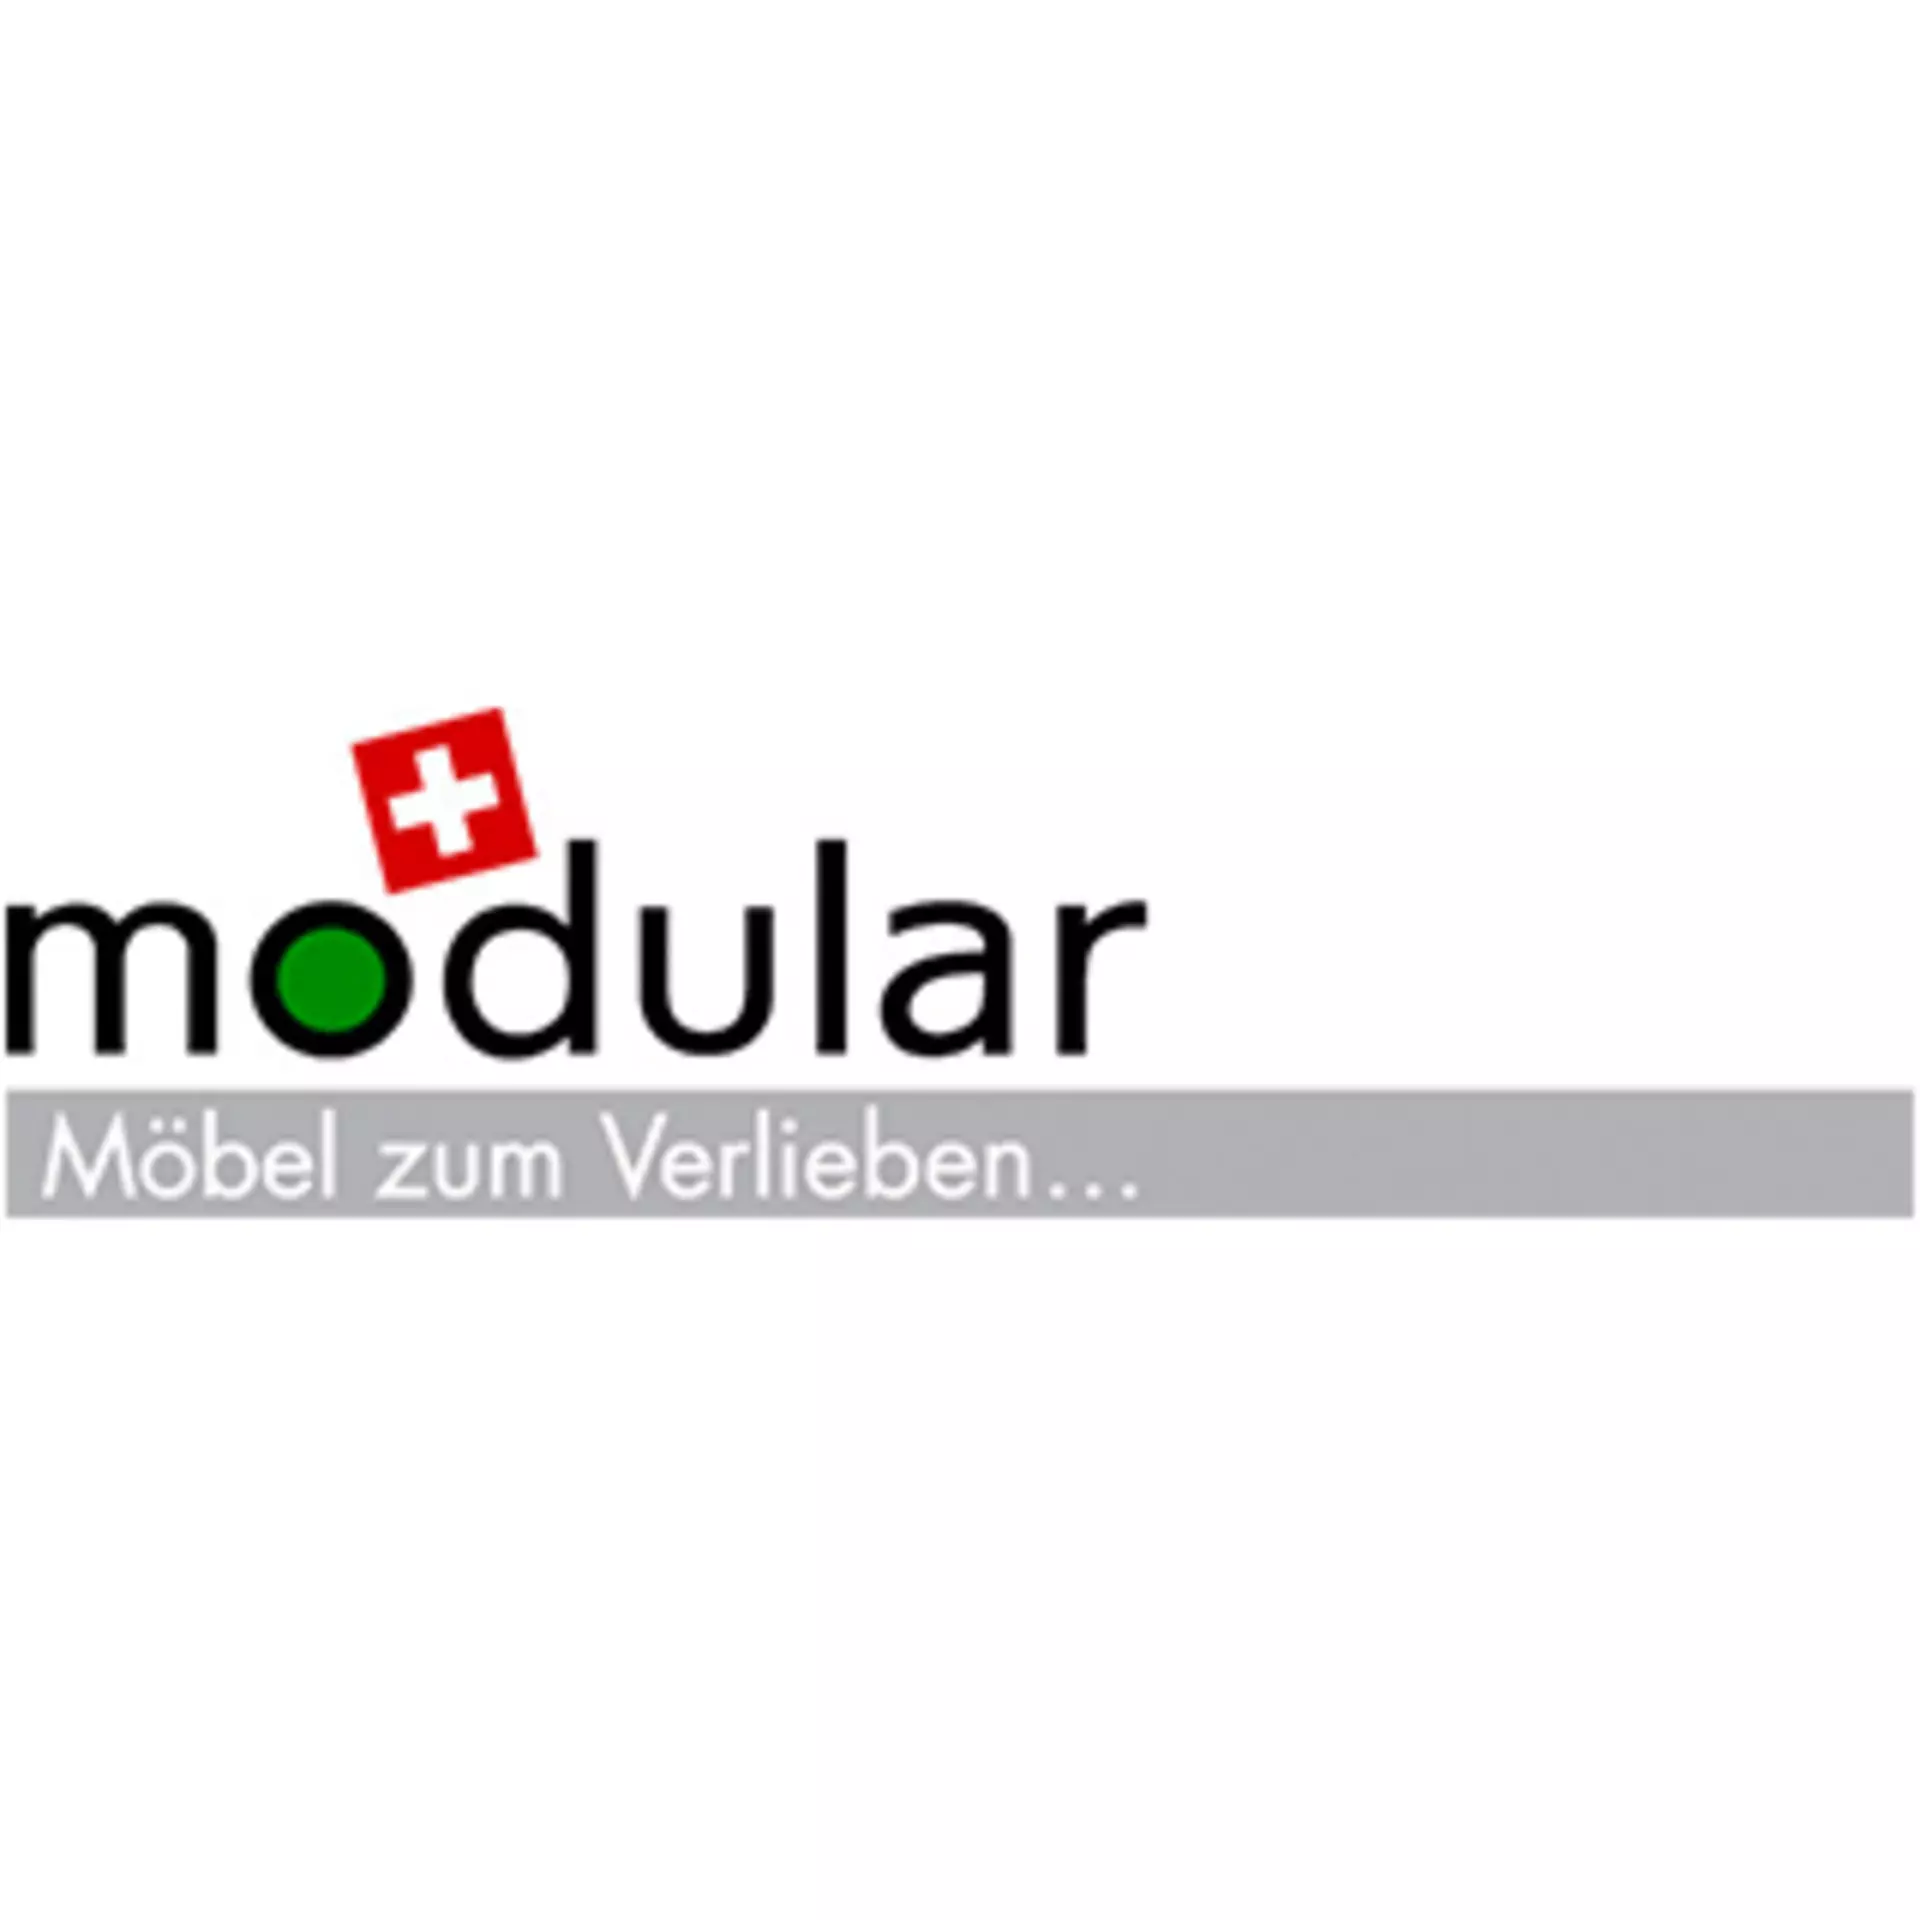 Logo "modular - Möbel zum Verlieben..."